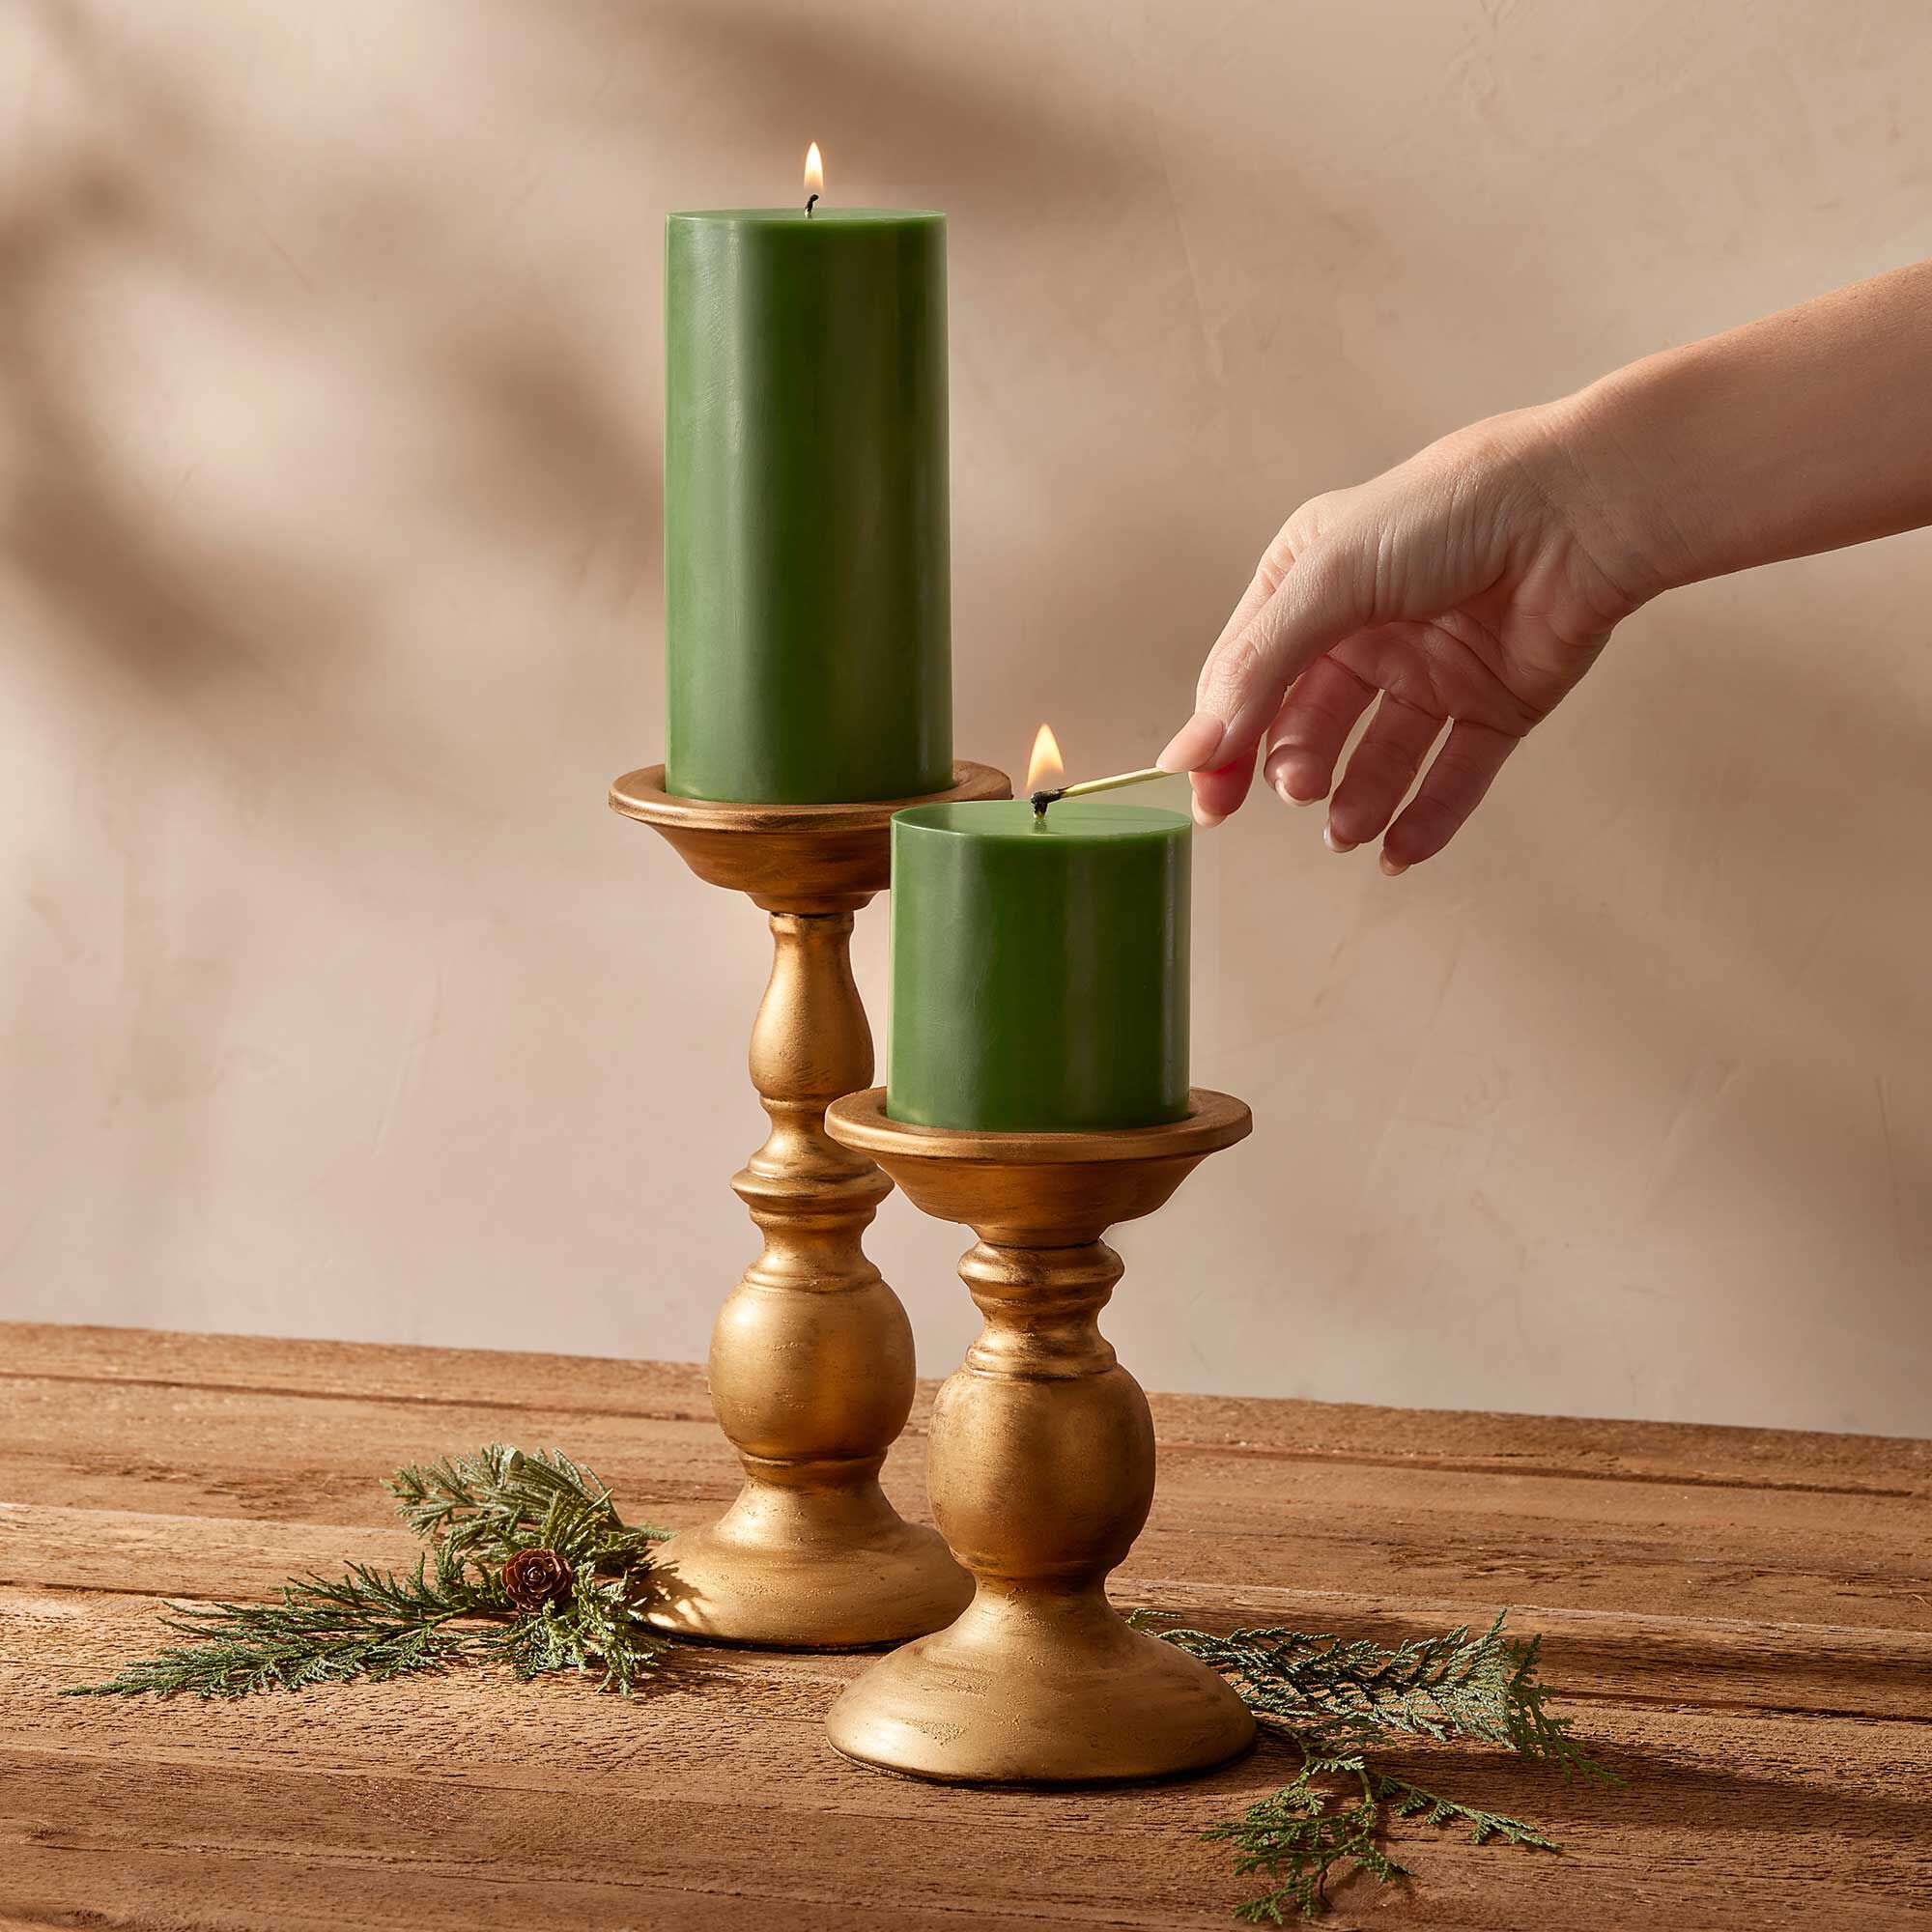 Thymes Frasier Fir Pillar Candle – 3" x 3"